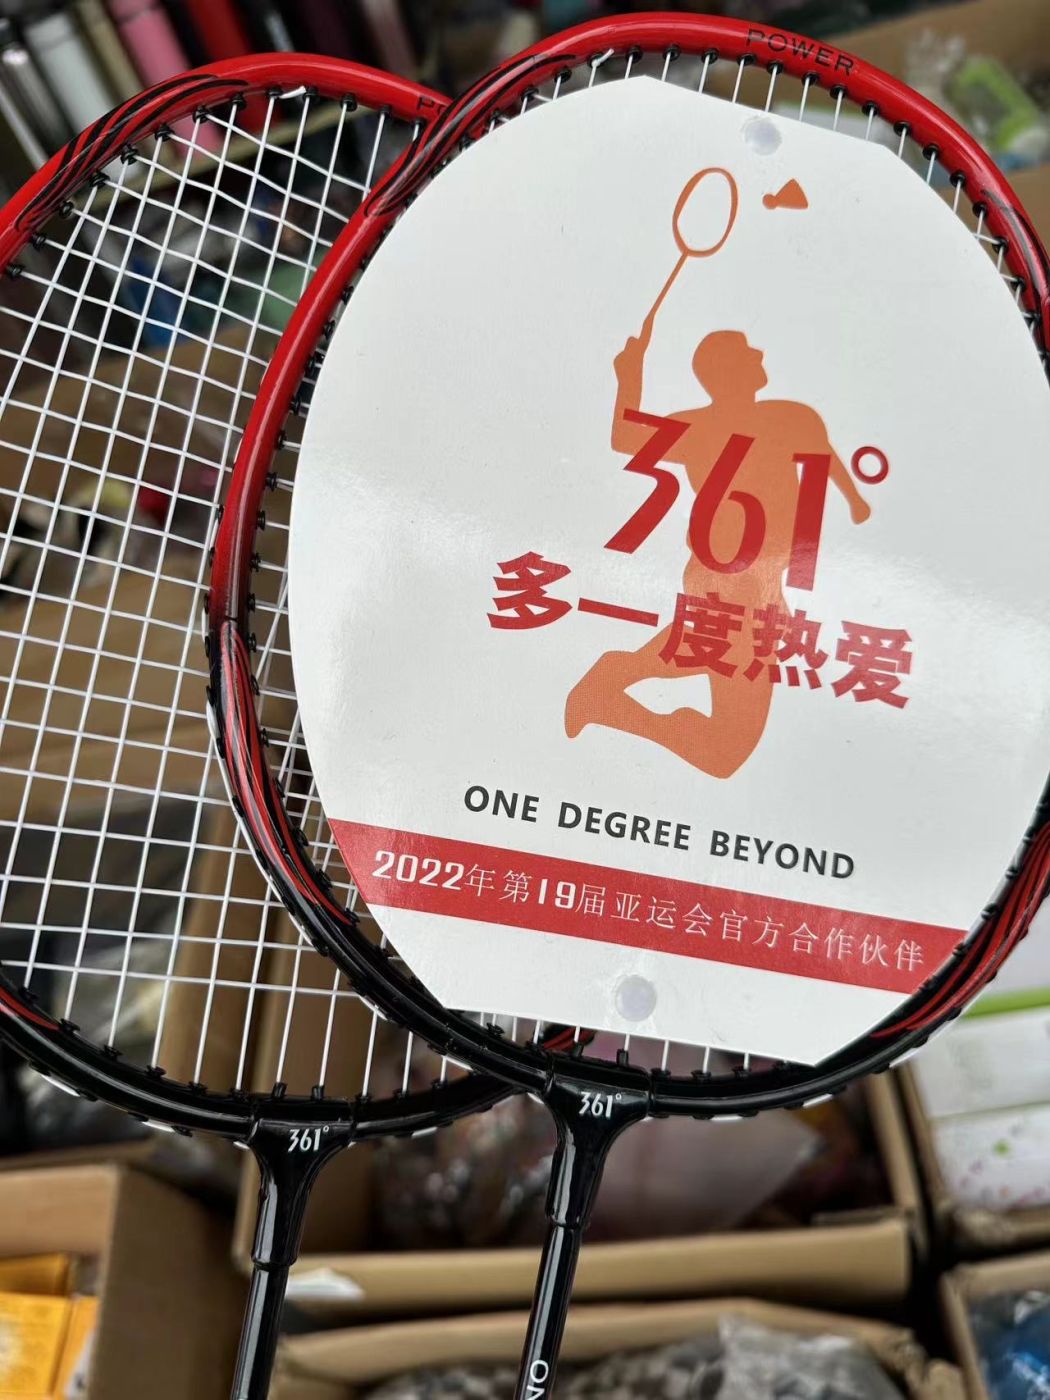 Bộ 2 chiếc vợt cầu lông 361 độ ( không kèm túi )